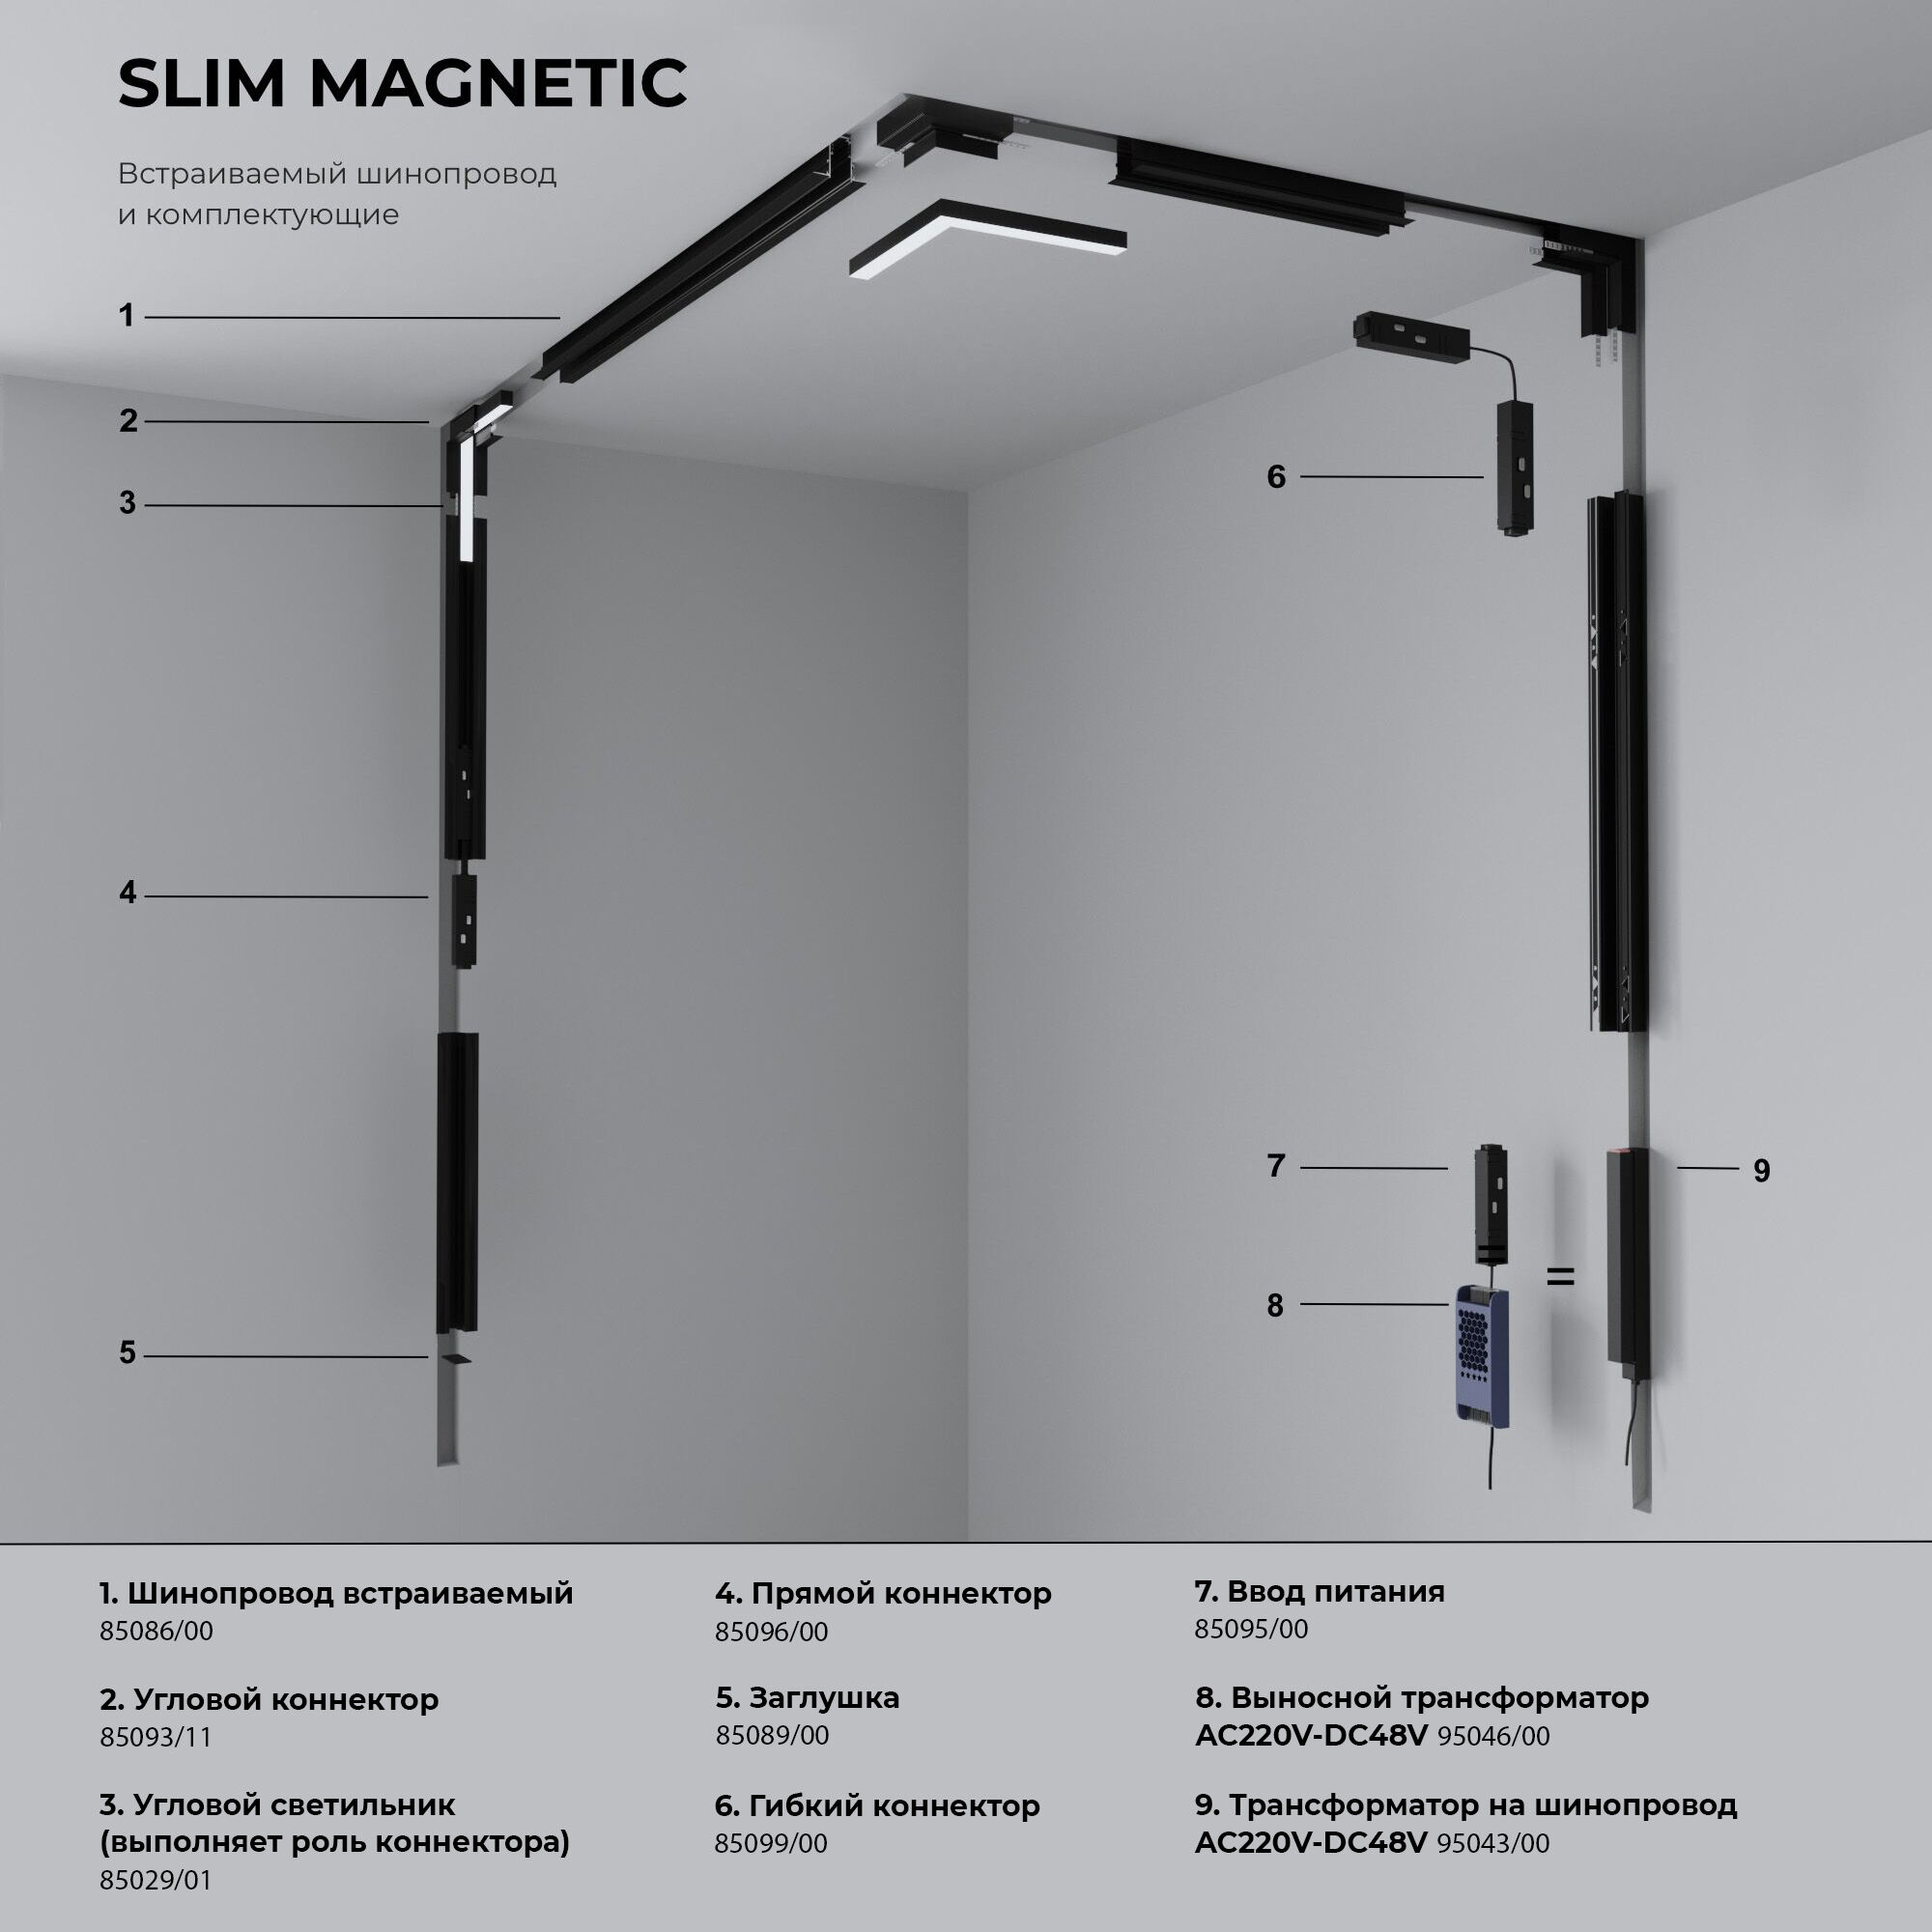 Ввод питания для шинопровода Slim Magnetic 85095/00